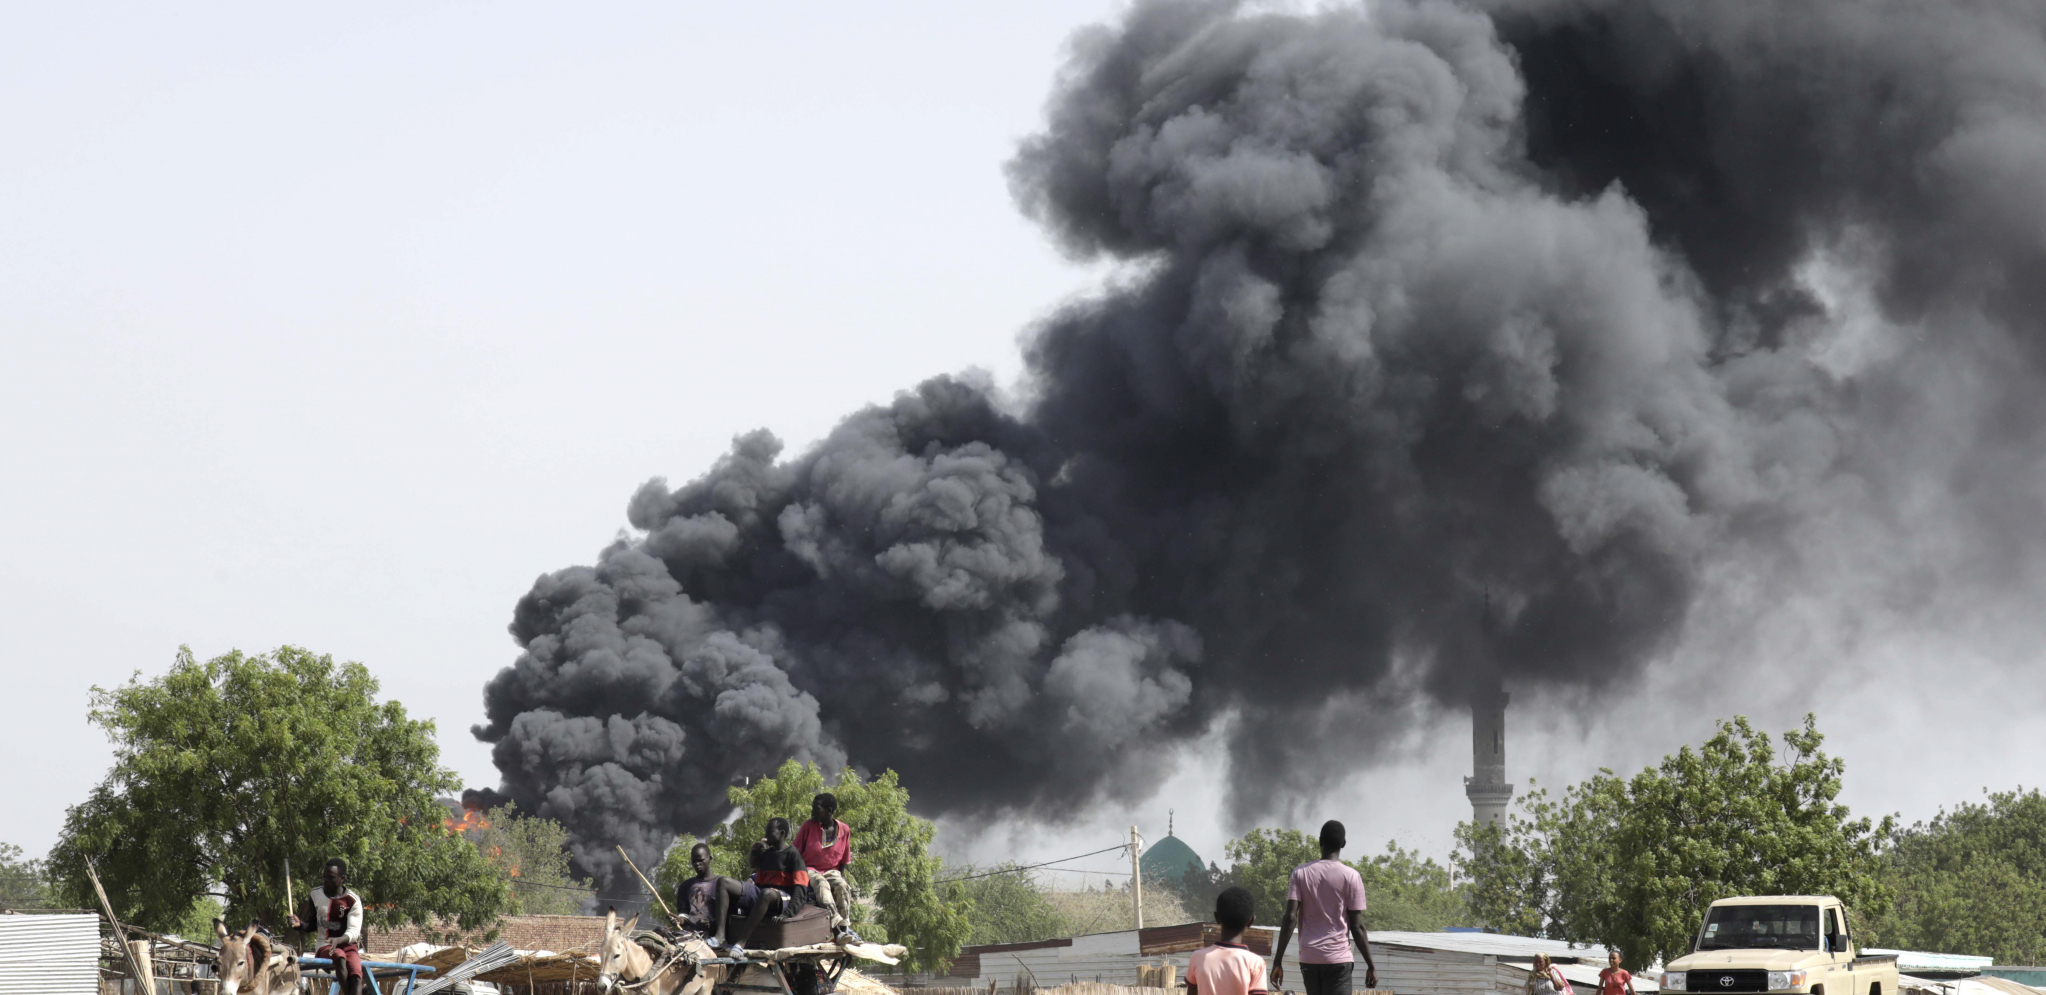 POKOLJ U SUDANU Granatirana pijaca, stradalo najmanje 34 ljudi, među njima i deca